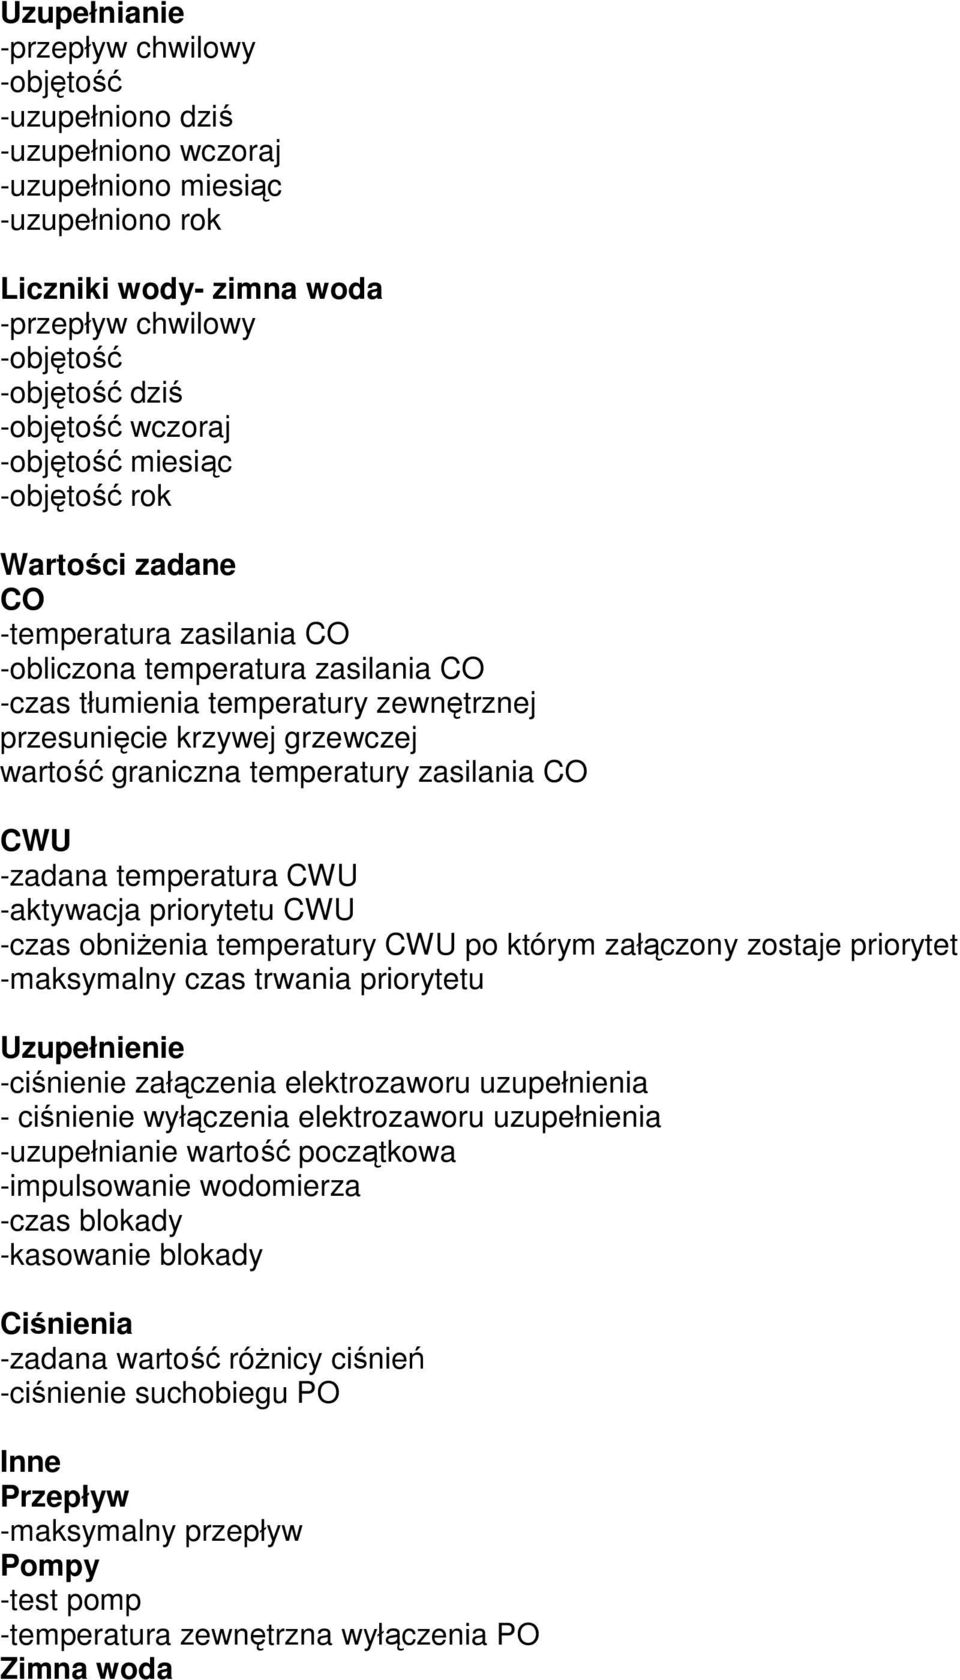 graniczna temperatury zasilania CO CWU -zadana temperatura CWU -aktywacja priorytetu CWU -czas obniŝenia temperatury CWU po którym załączony zostaje priorytet -maksymalny czas trwania priorytetu